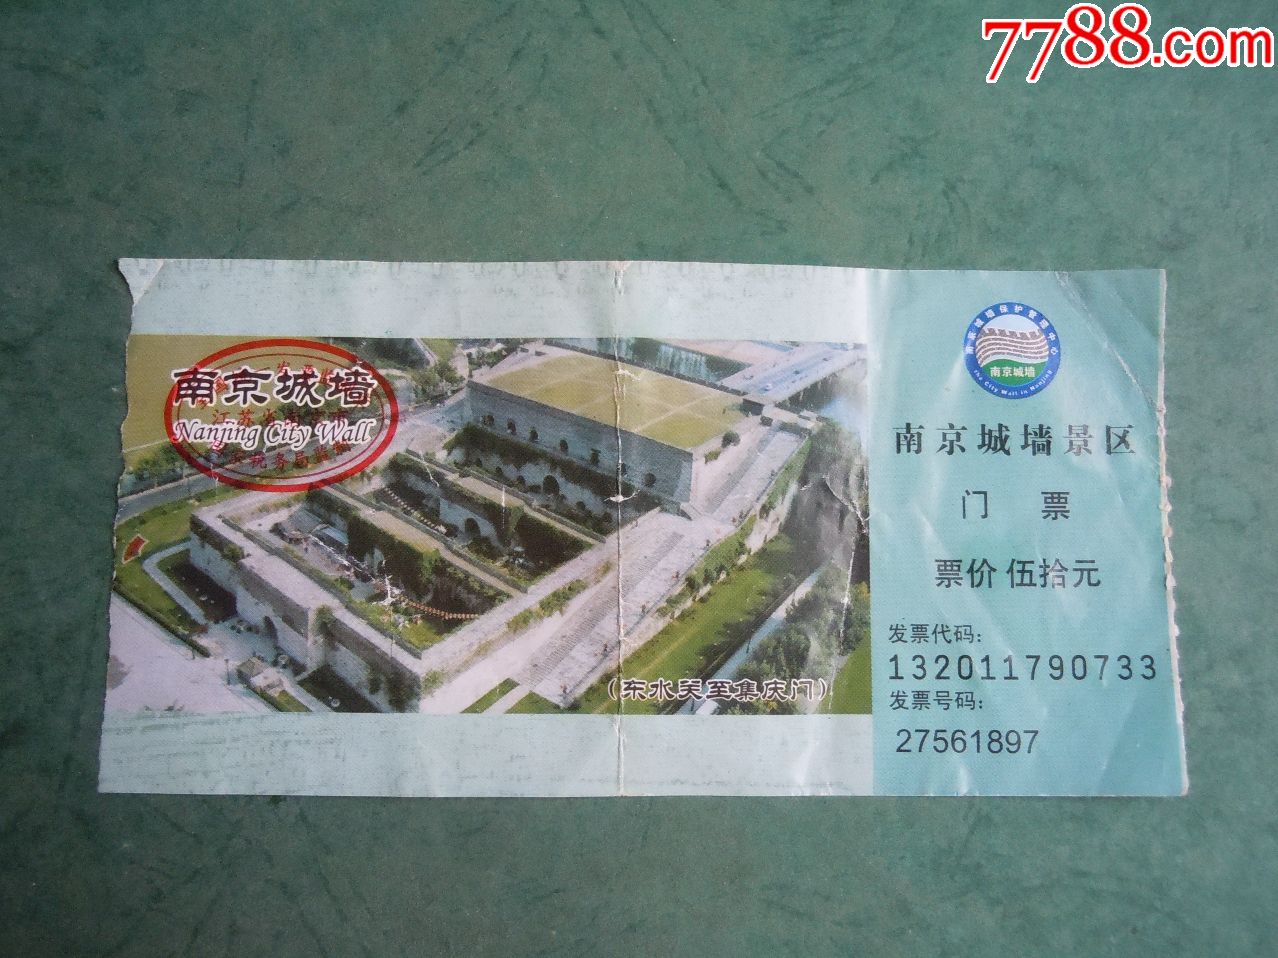 南京城墙景区(50元票,旅游景点门票【回忆阁】_第1张_7788门票收藏